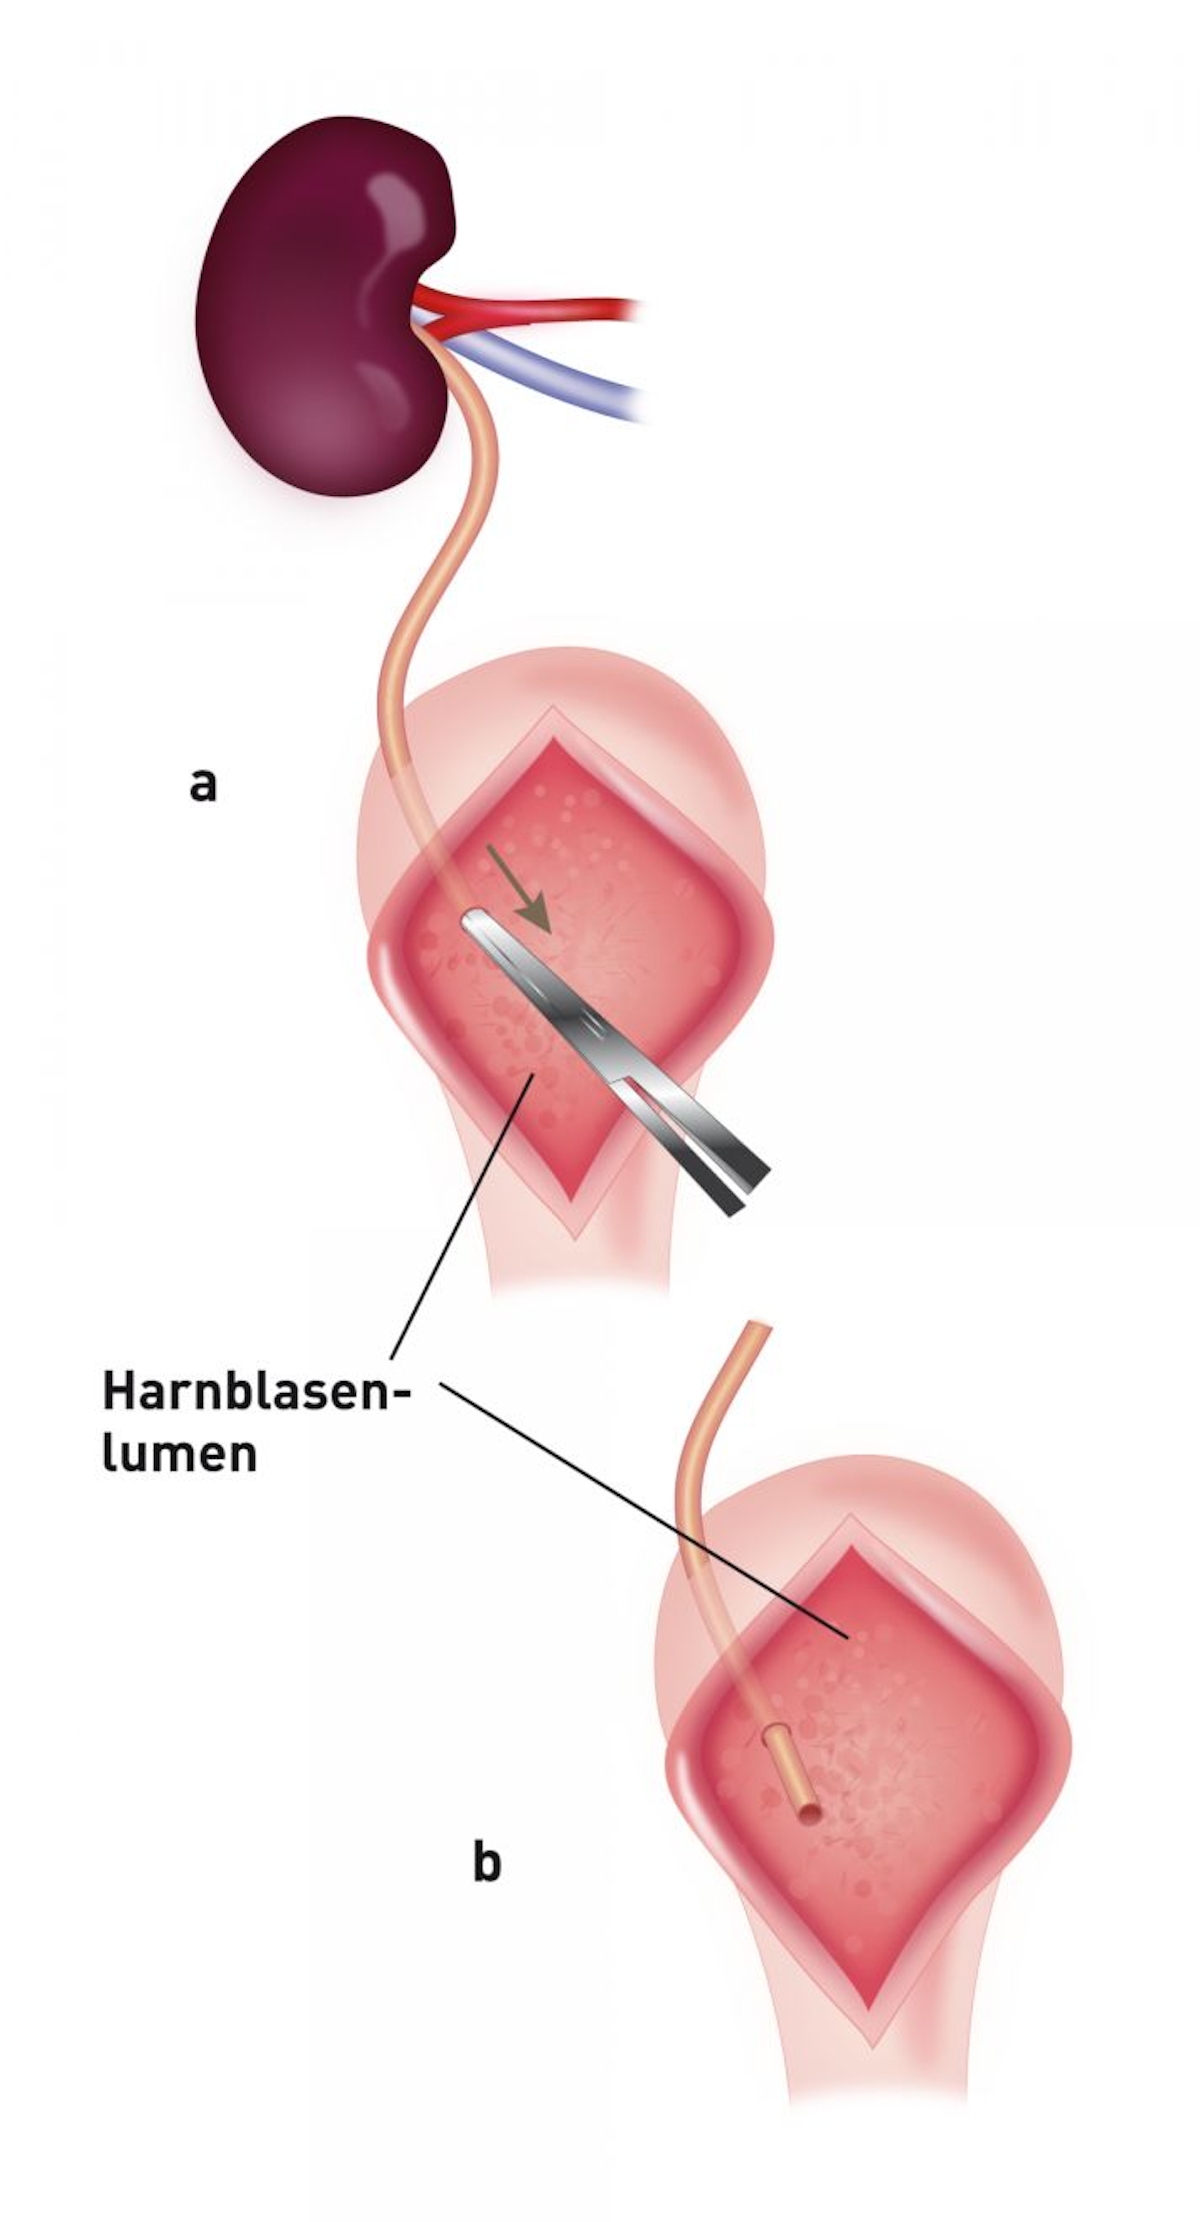 Schematische Darstellung einer Ureteroneozystostomie mittels intravesikulärer Schleimhautappositionstechnik. Nach Zystotomie in der ventralen Mittellinie wird das Ende des Spenderharnleiters an der Apex direkt in die Blase eingebracht (a, b).